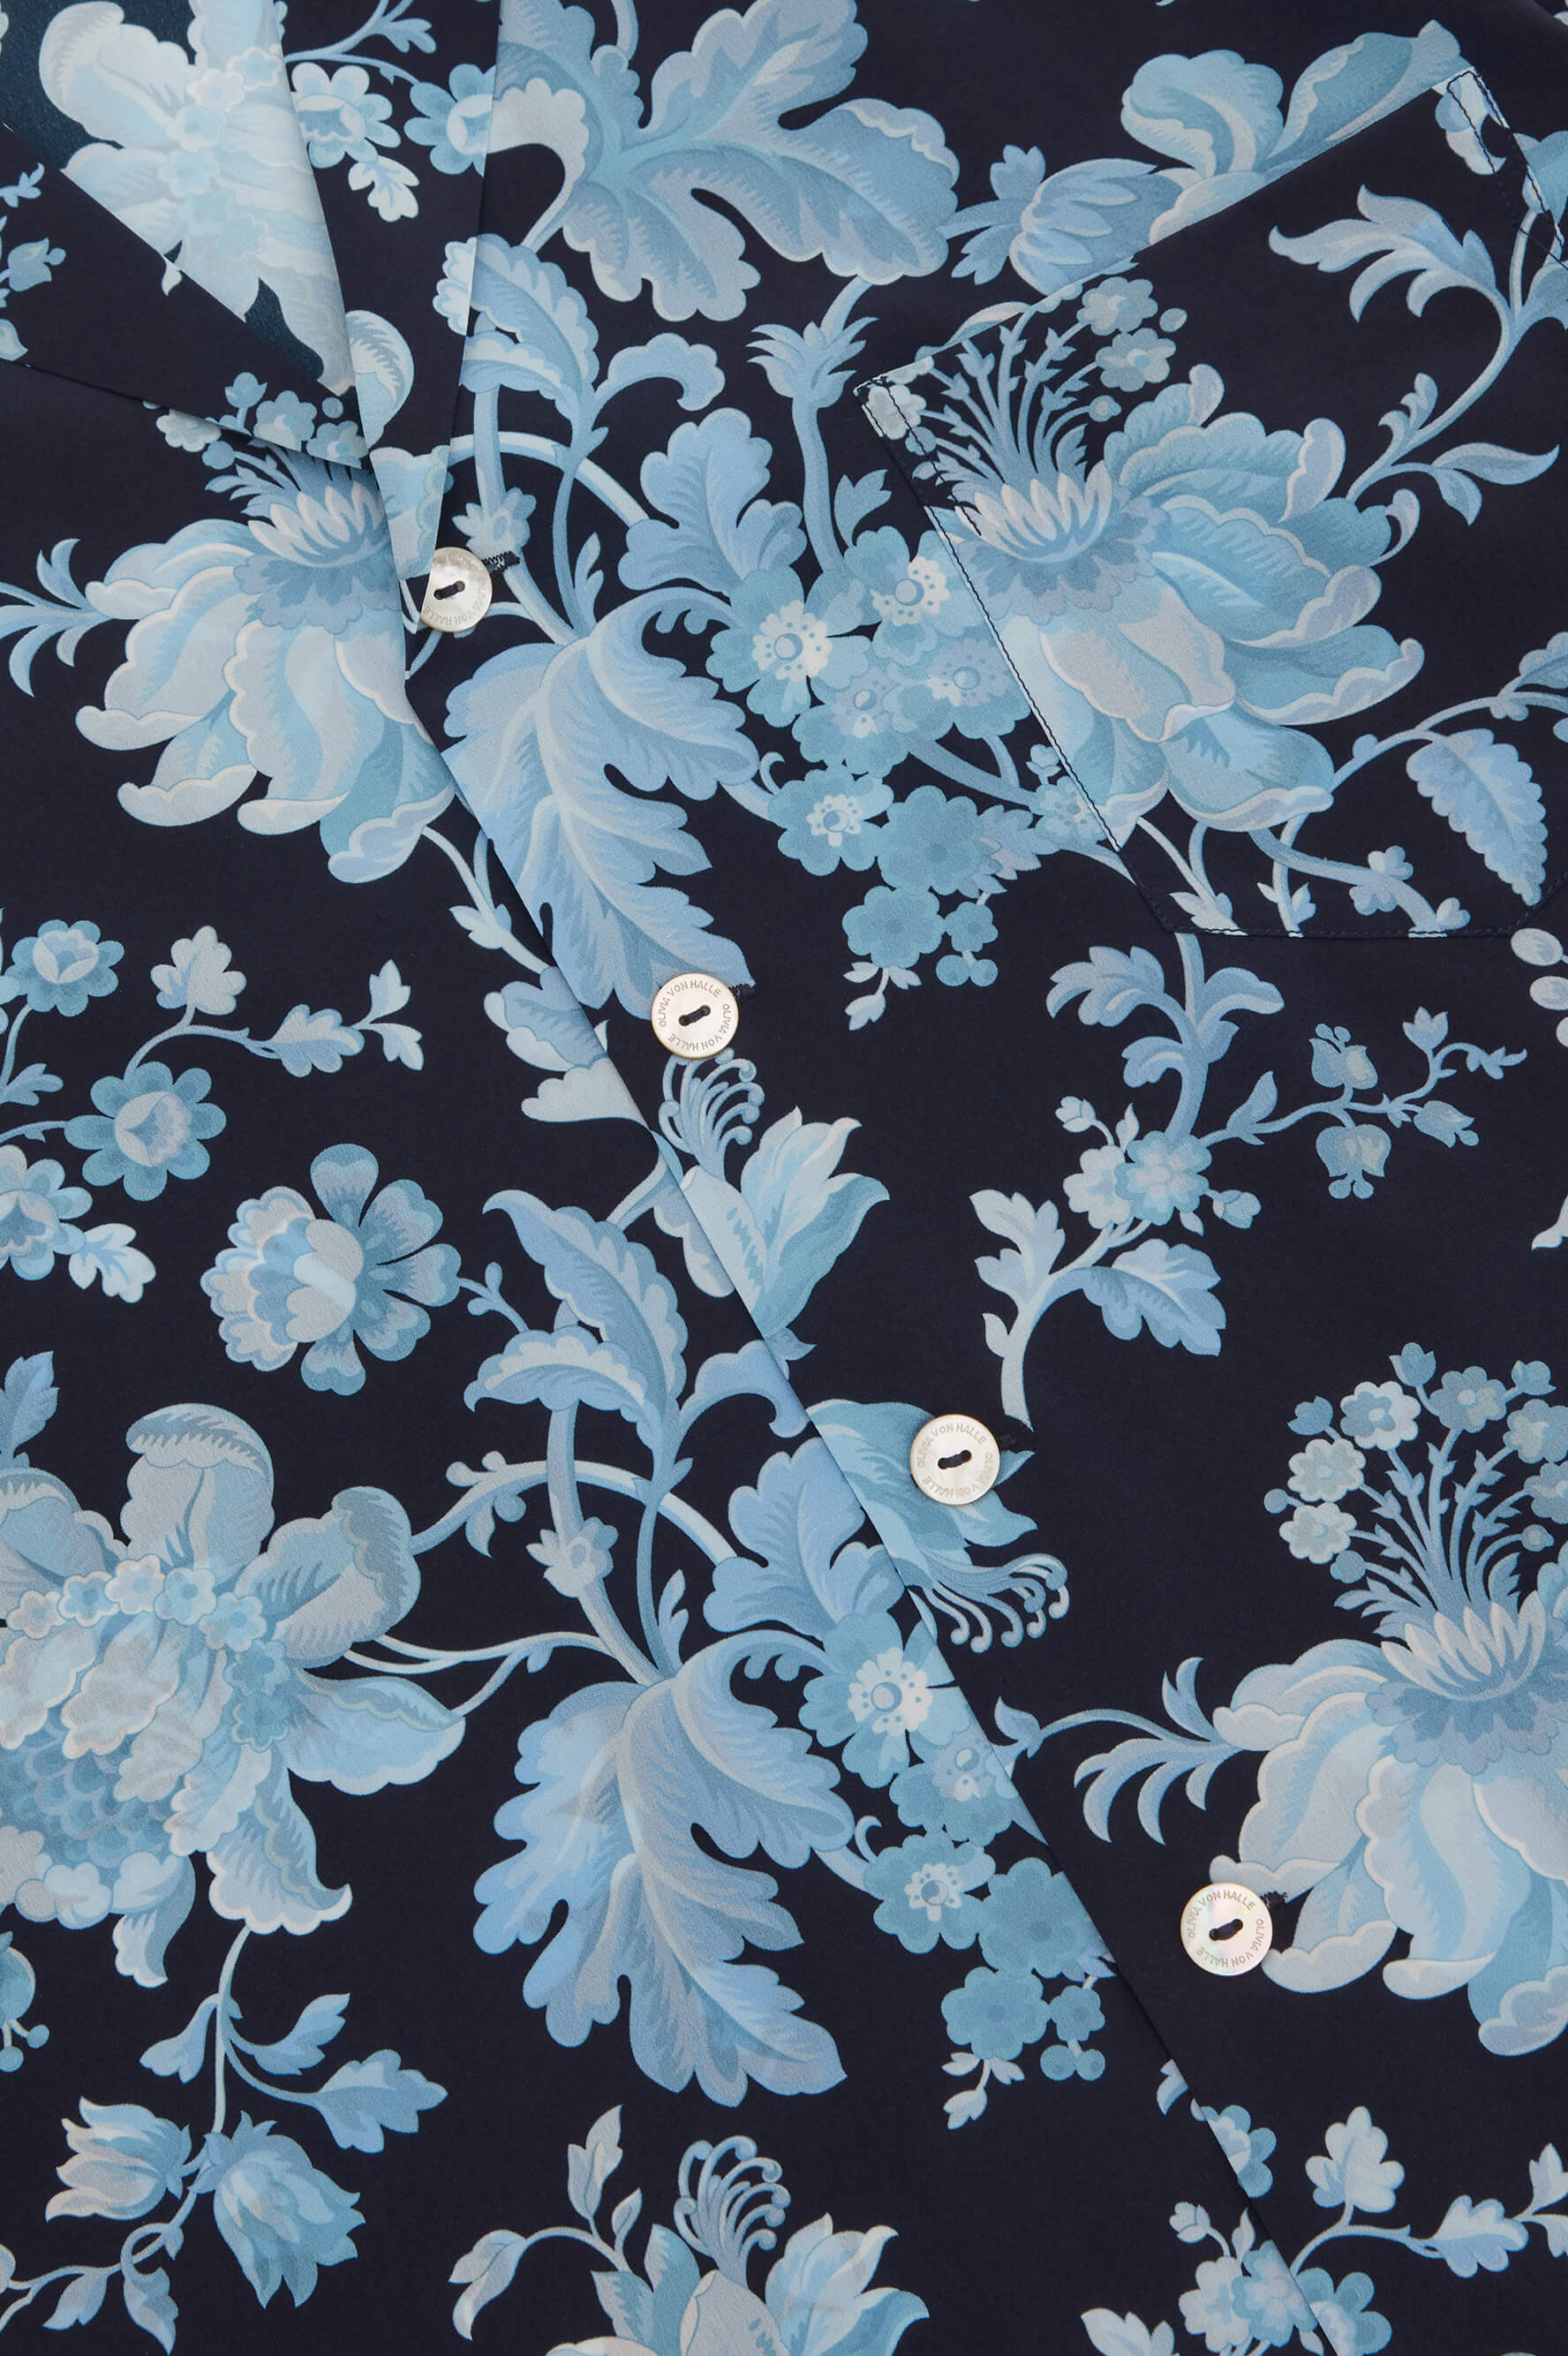 Casablanca Alcides Blue Floral Pajamas in Silk Crêpe de Chine